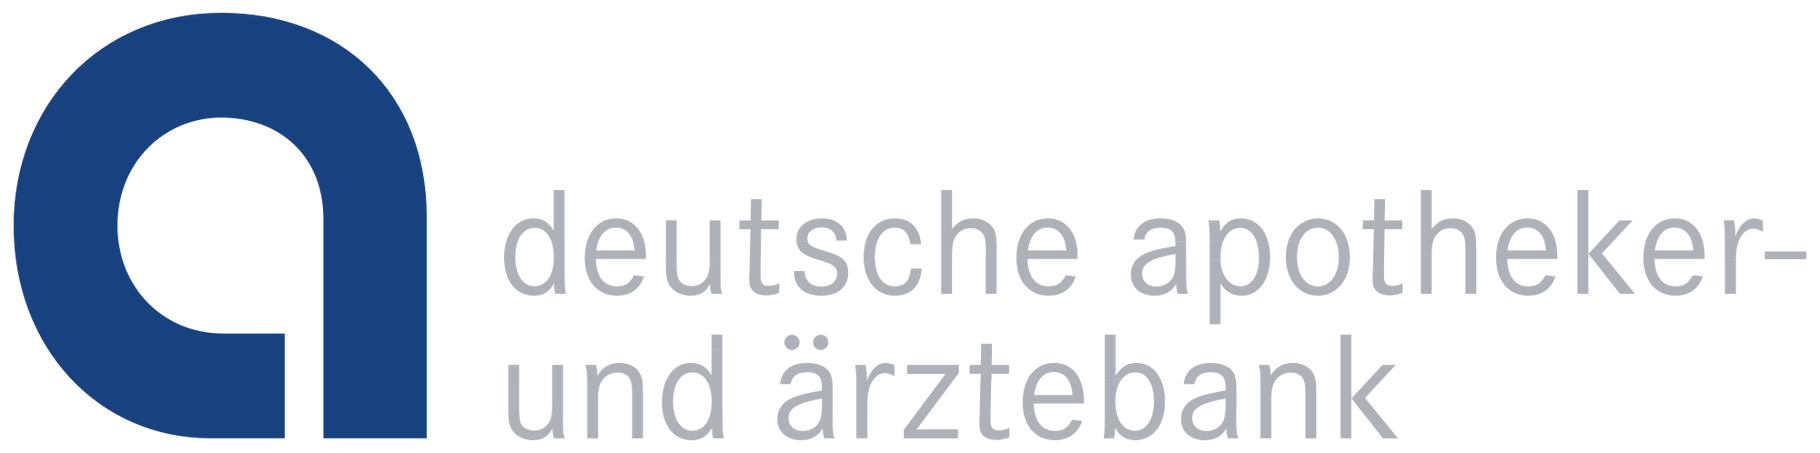 Deutsche Apotheker- und Ärztebank Brand Logo